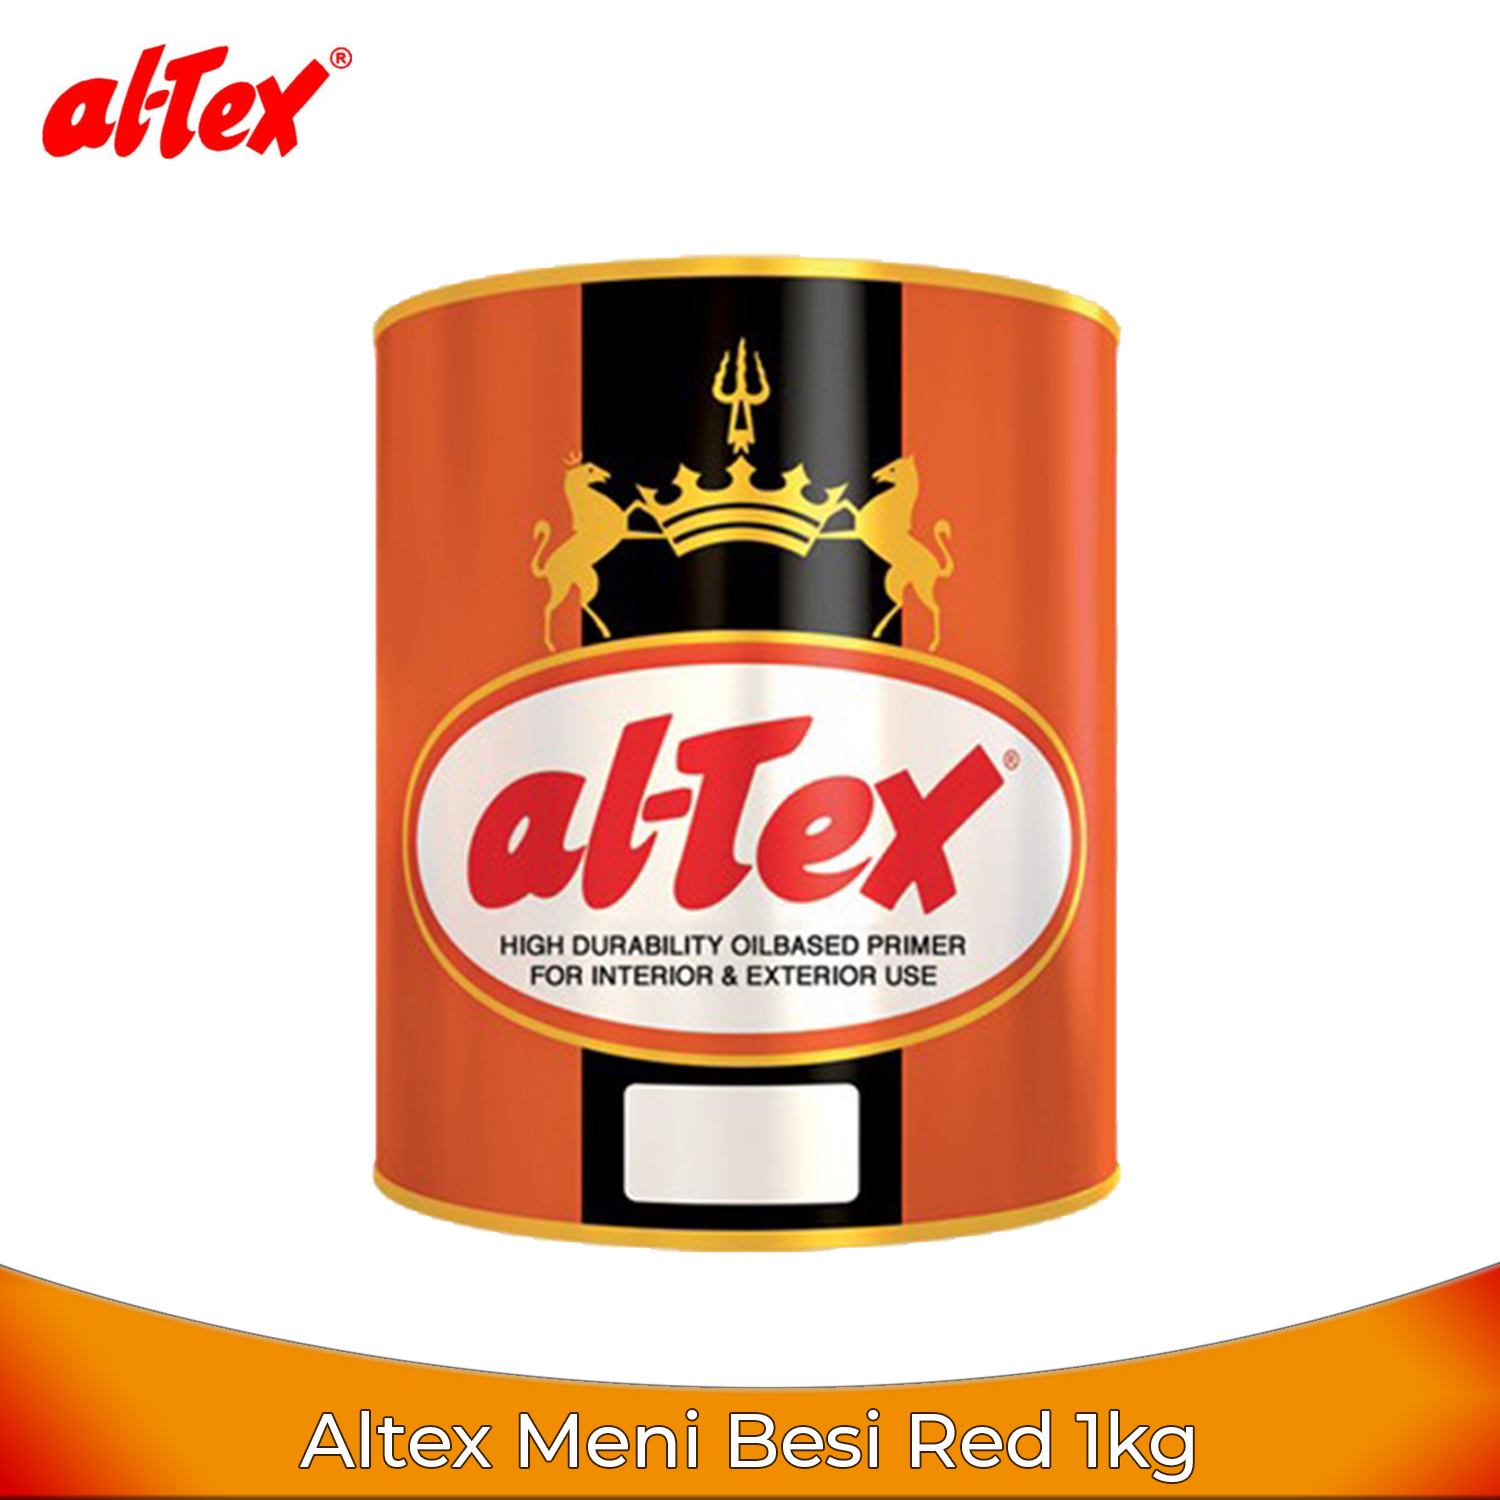 Altex Meni Besi Red 1Kg - Cat Dasar Oil Based